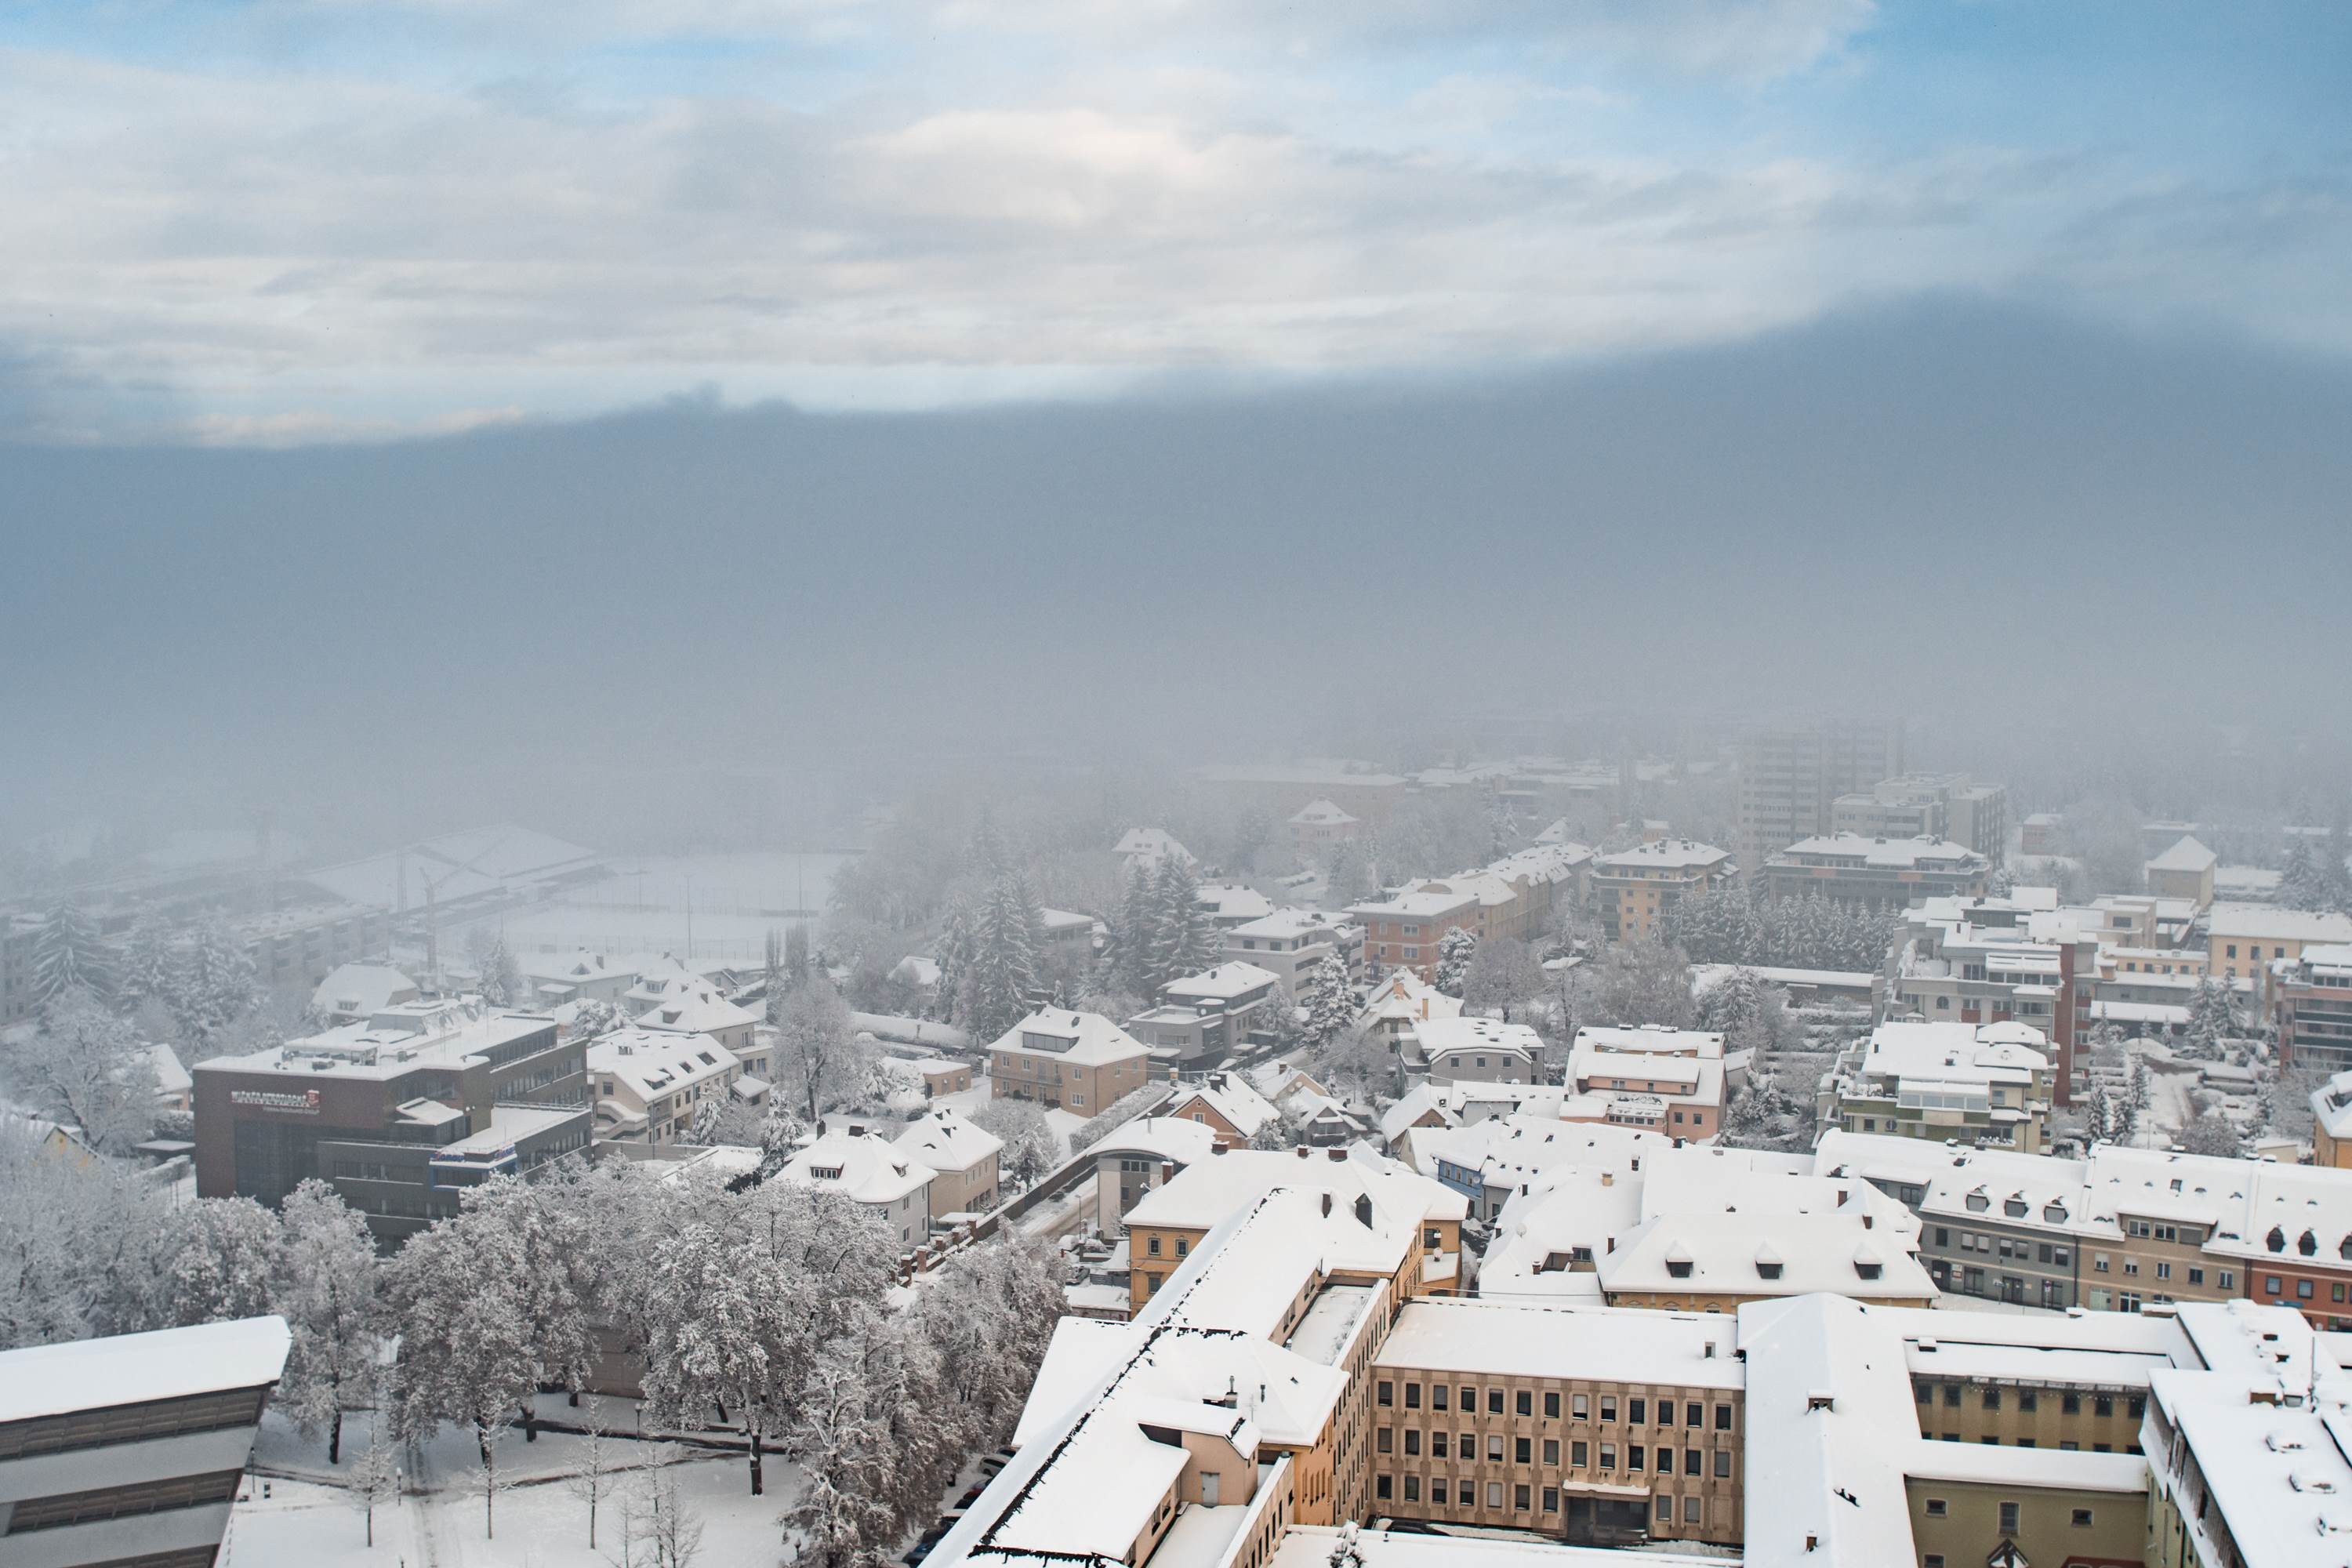 Der Norden der Stadt Klagenfurt im Nebel, gesehen vom Stadtpfarrturm aus